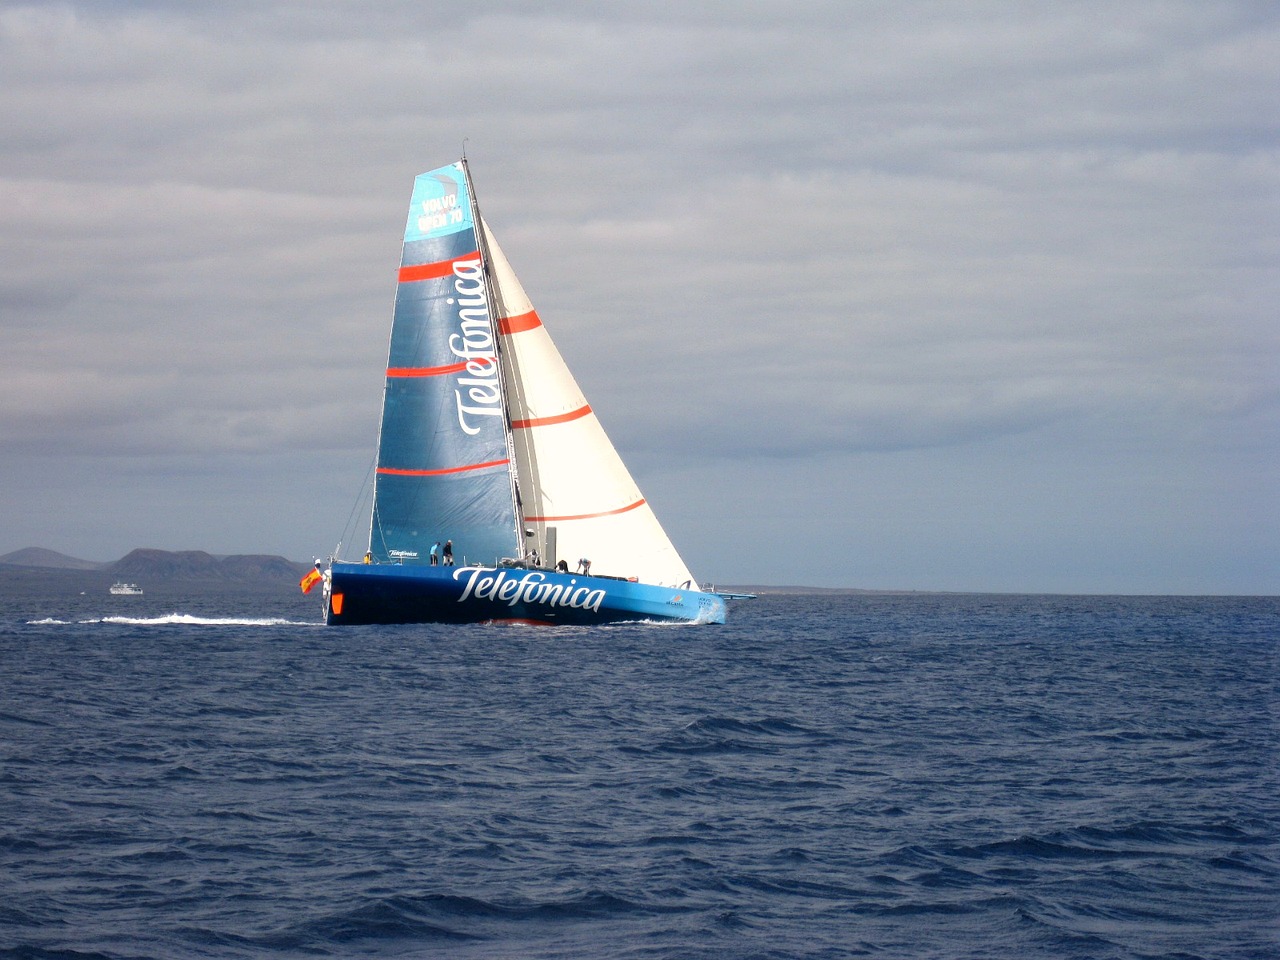 yacht telefonica race free photo